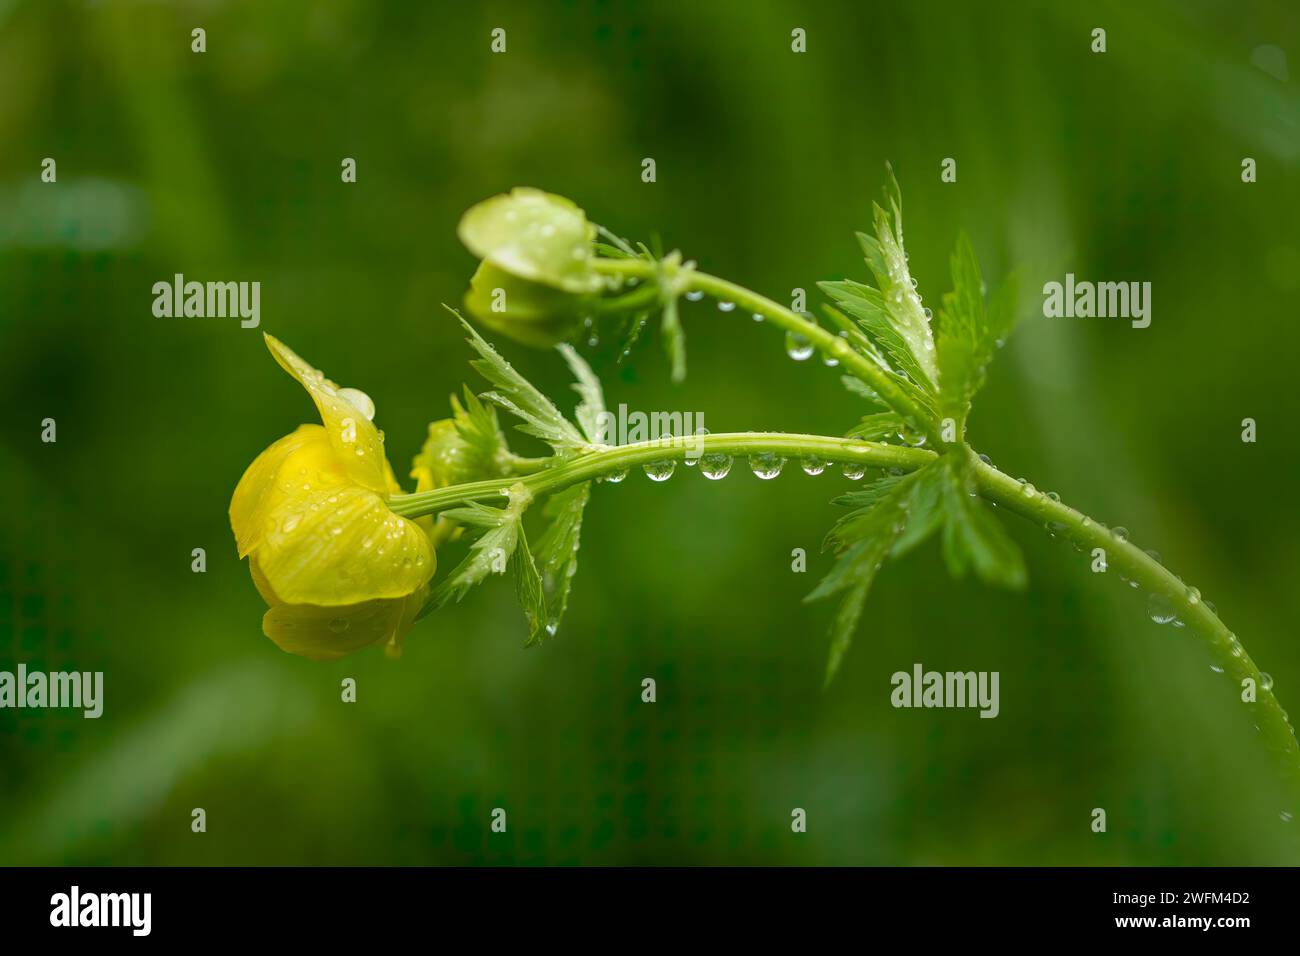 Fiore del globo (Trollius europaeus) dopo una pioggia primaverile. Concetto di gocce d'acqua. La pioggia cade su un fiore giallo. La pioggia cade su un fiore del globo. Foto Stock